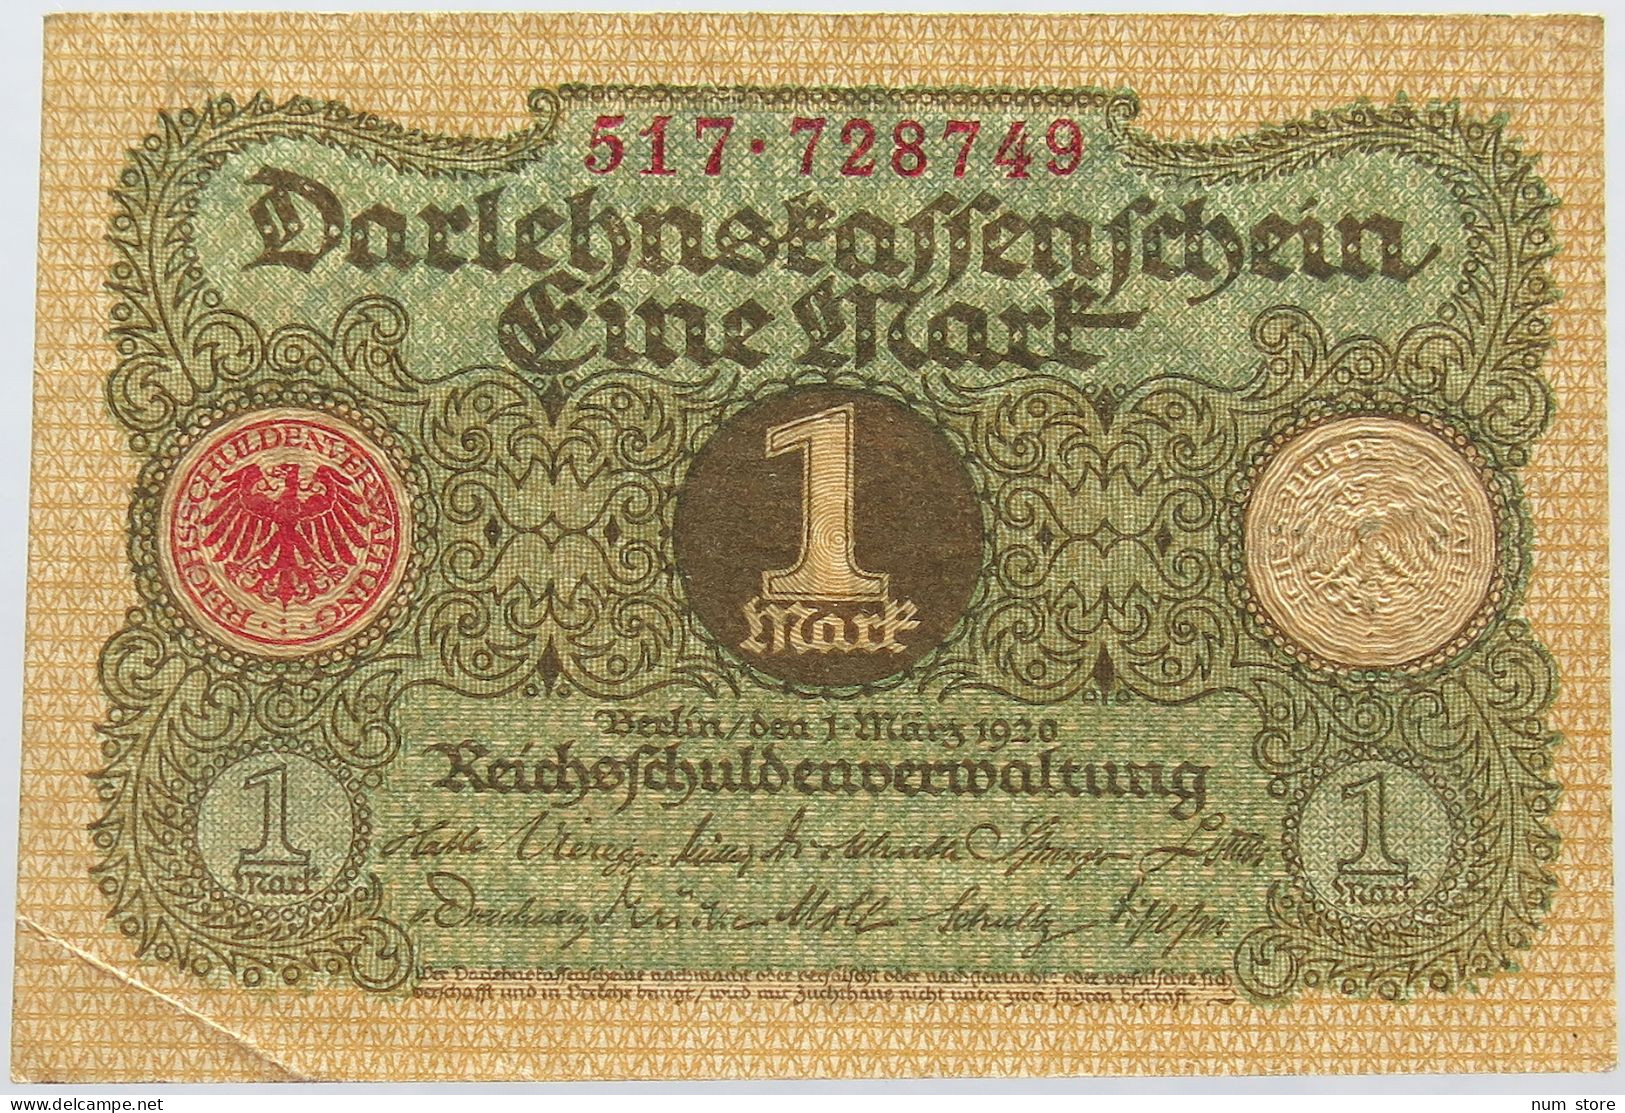 GERMANY 1 MARK 1920 #alb004 0111 - 1 Mark